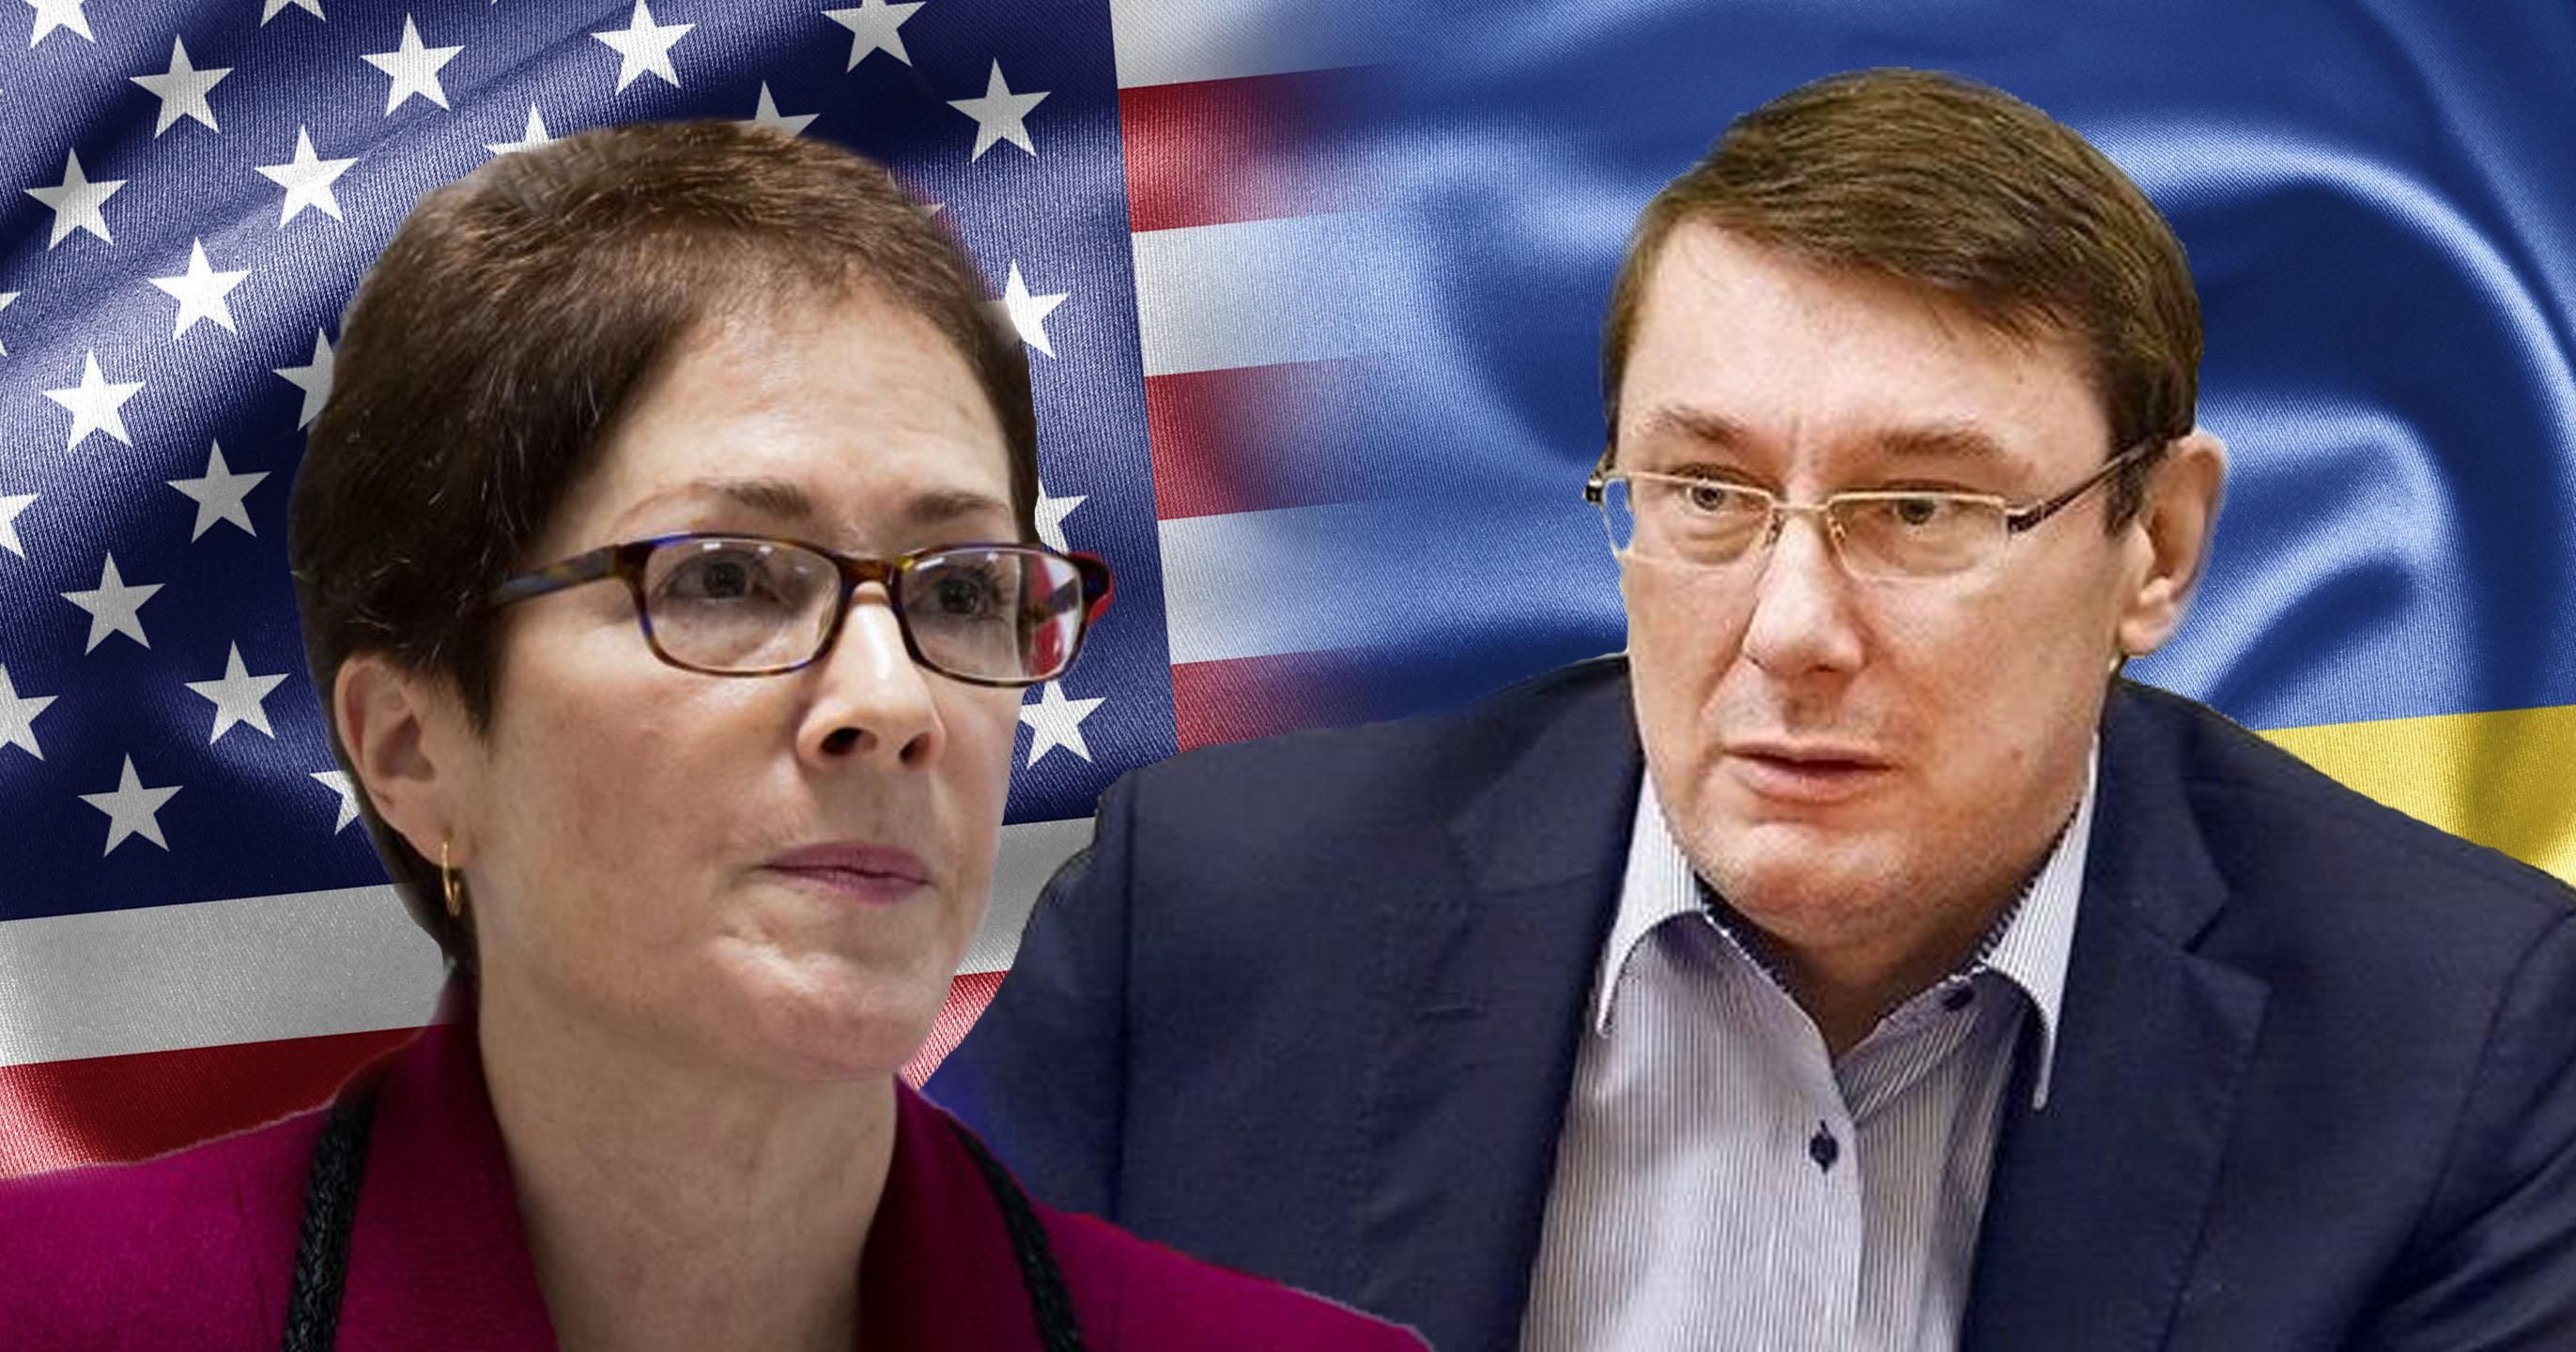 Скандал с послом США в Украине: почему это выгодно Порошенко